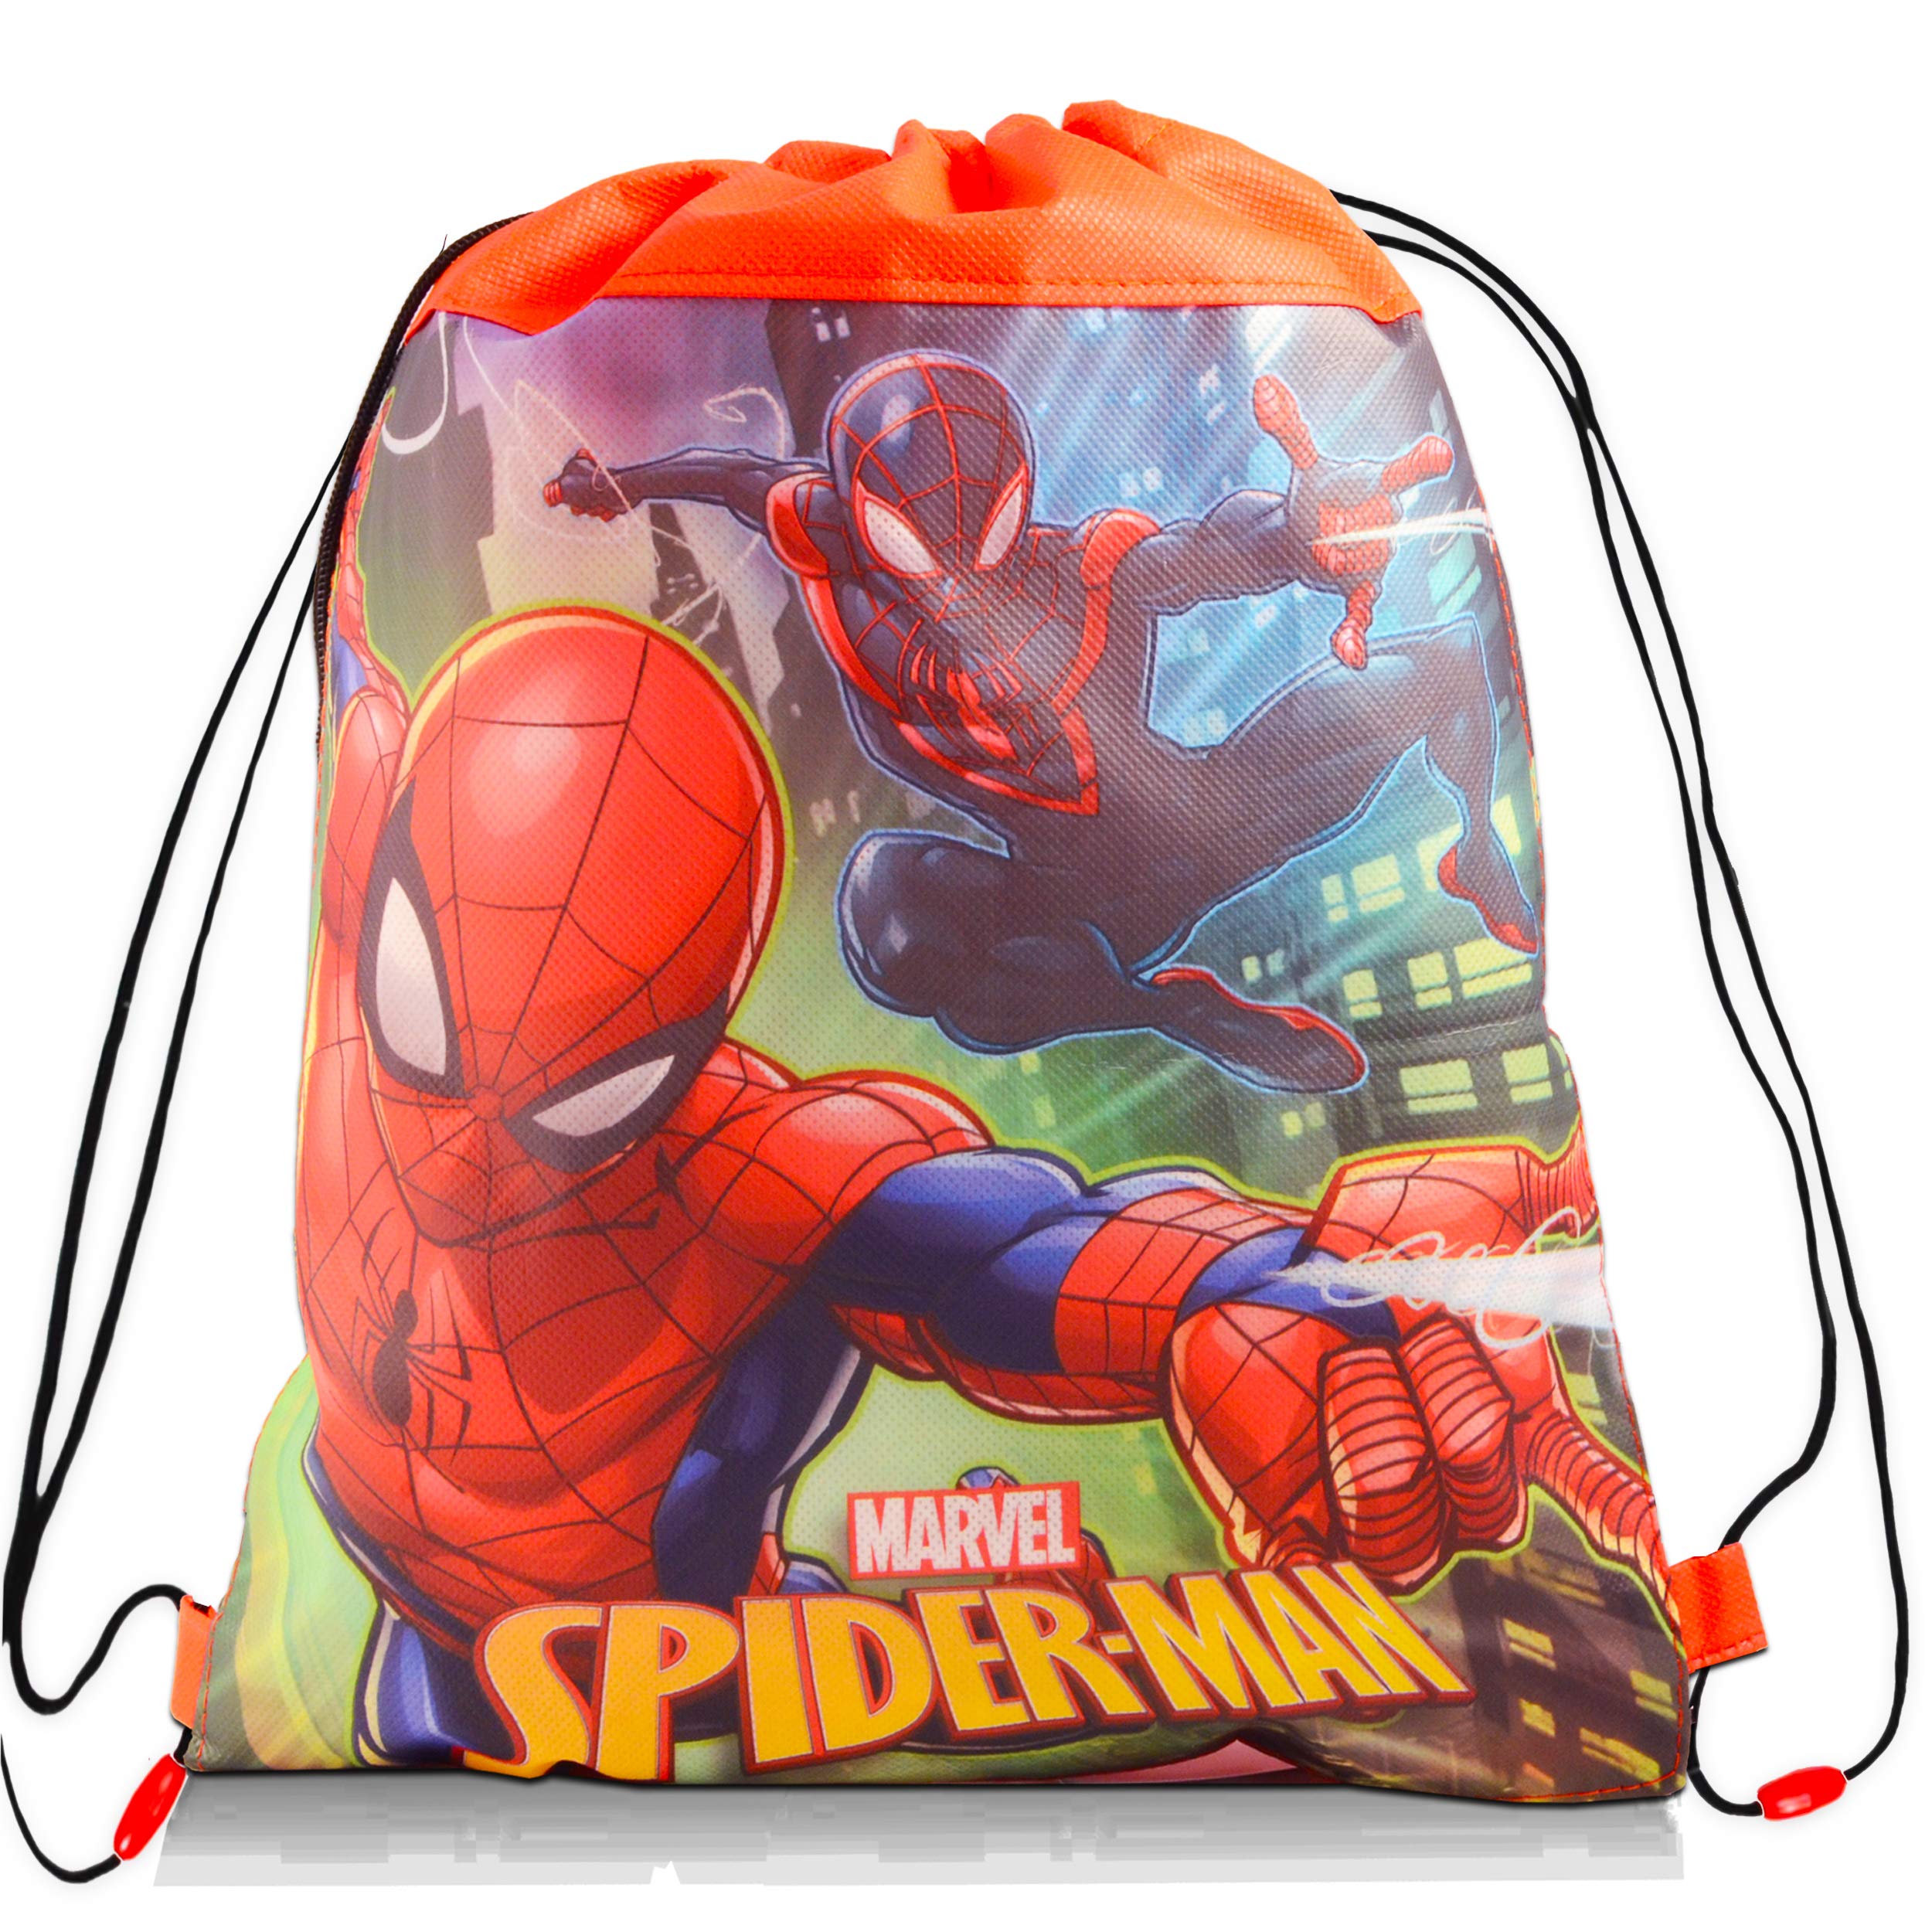 Buy marvel spiderman travel cch bag bundle pack spiderman activity set